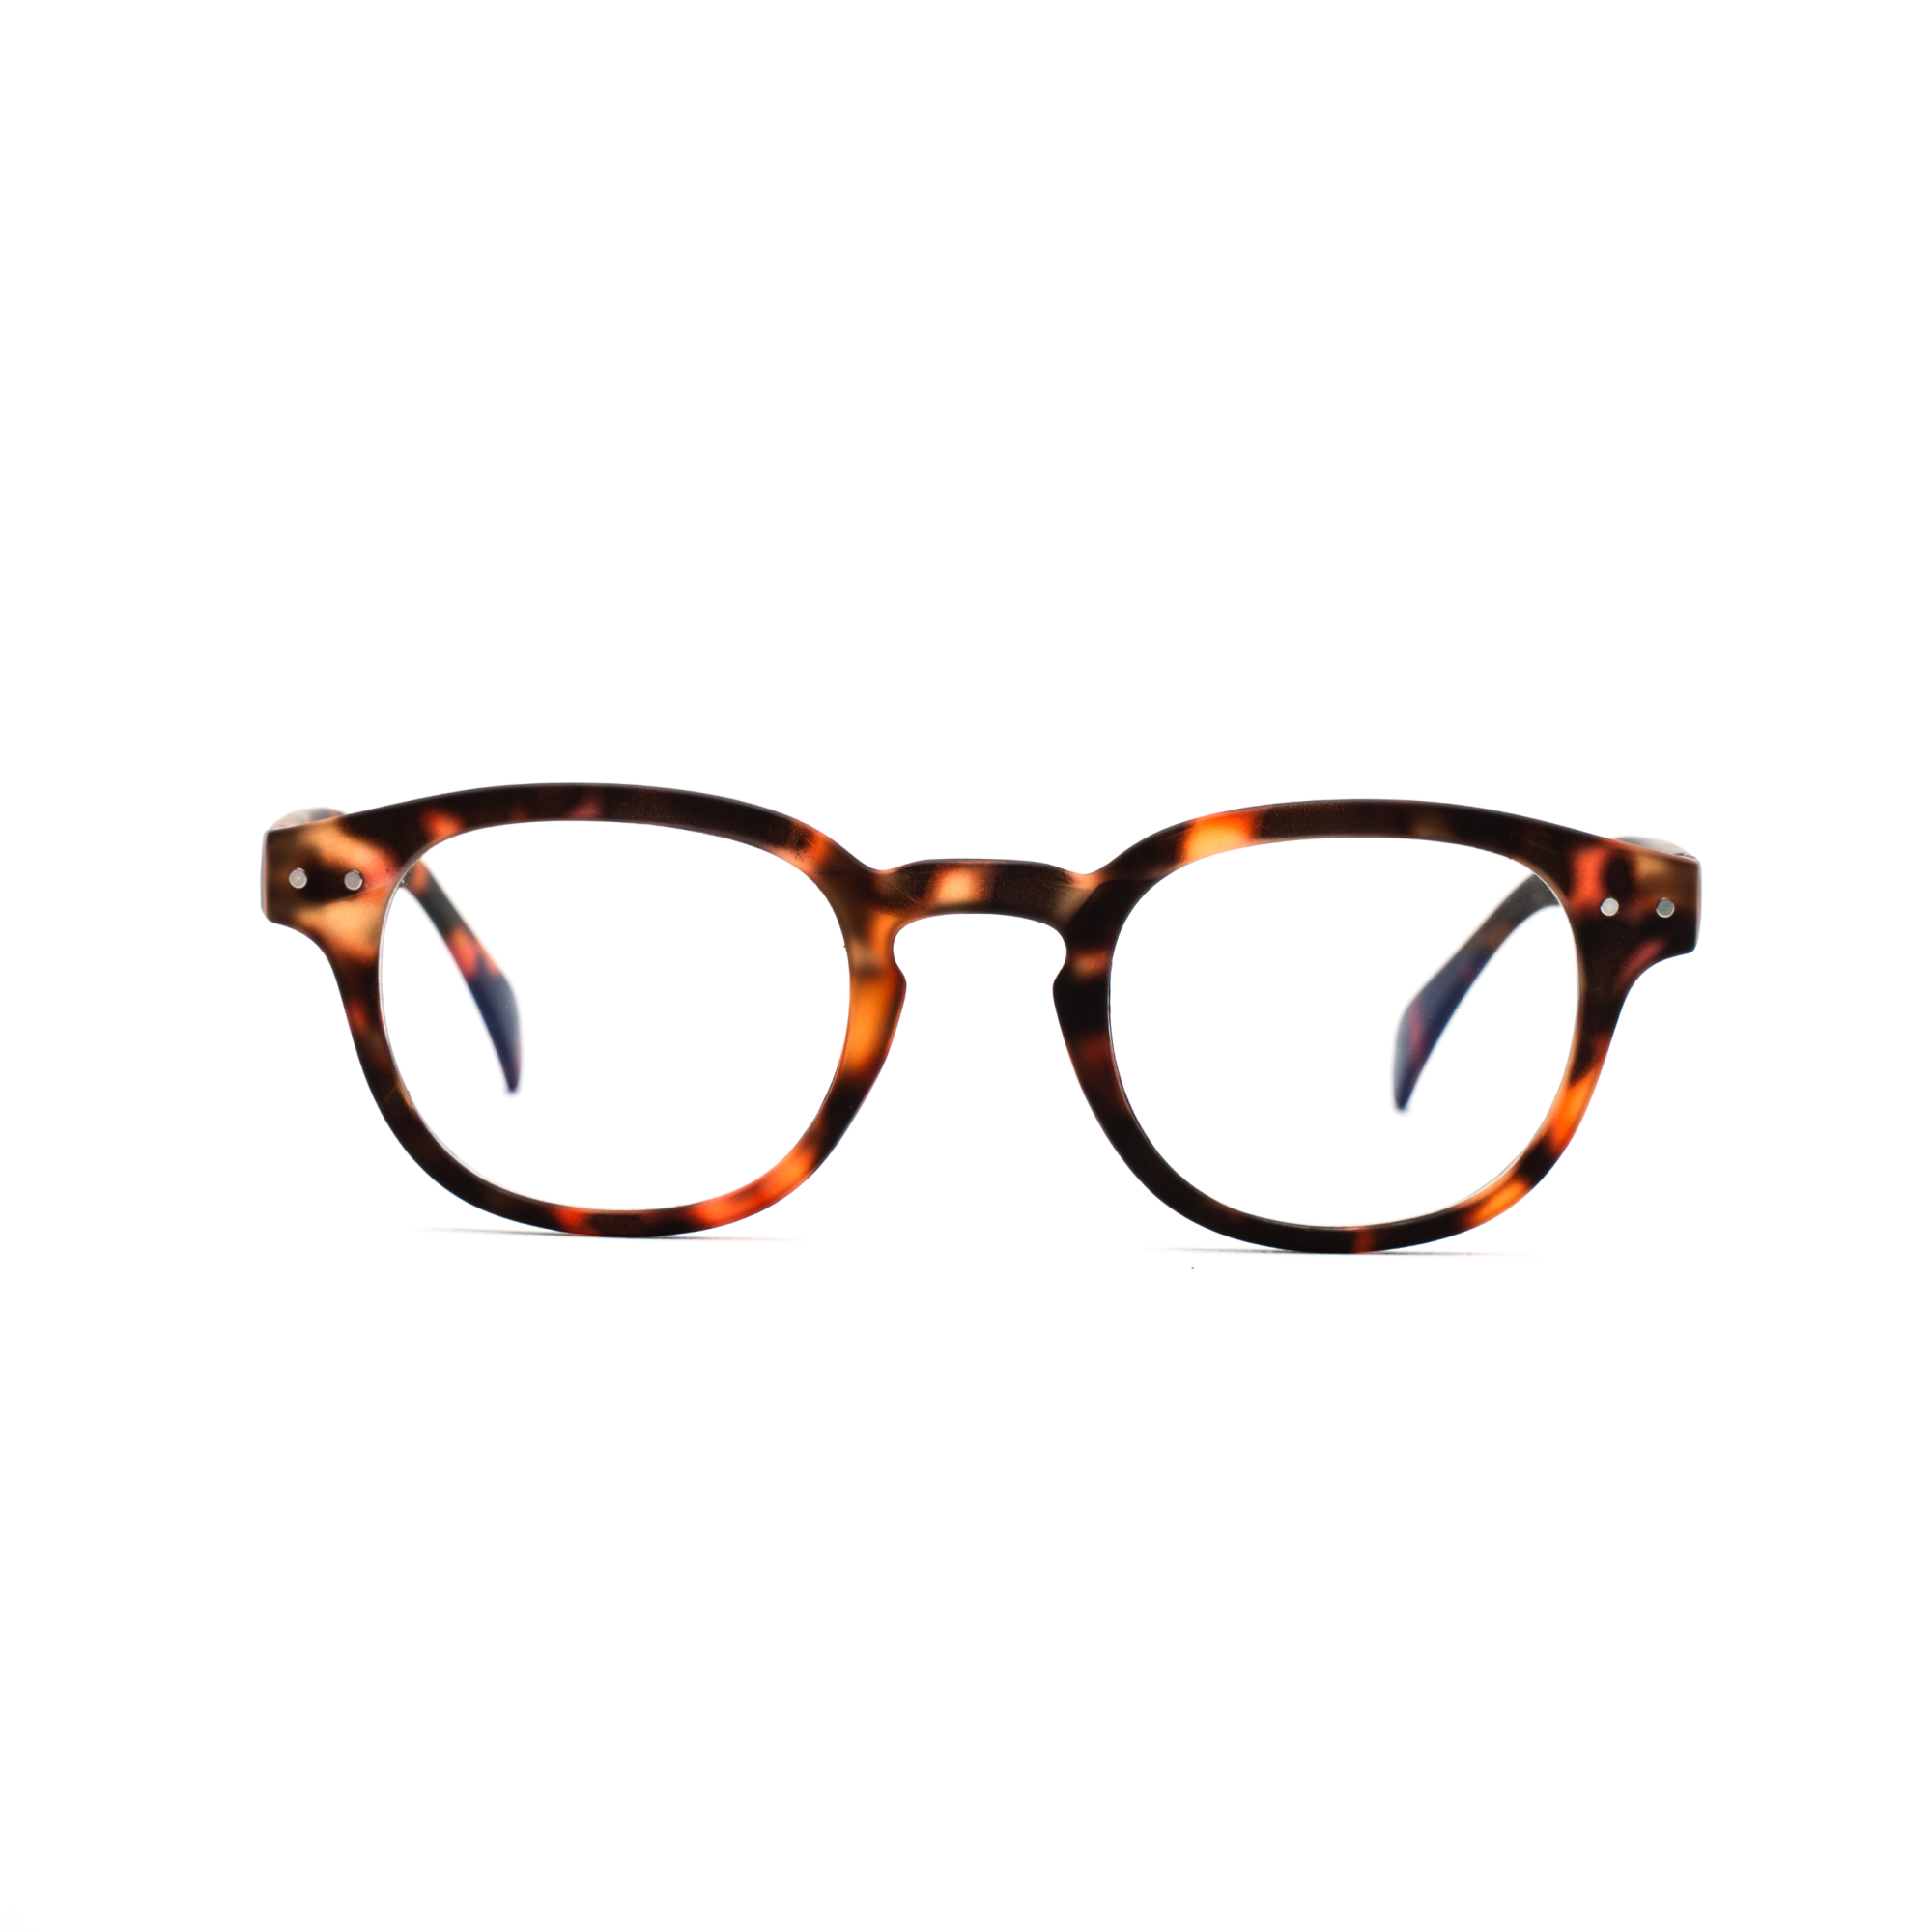 Men's reading glasses – Anton Ultimate m - Tortoise